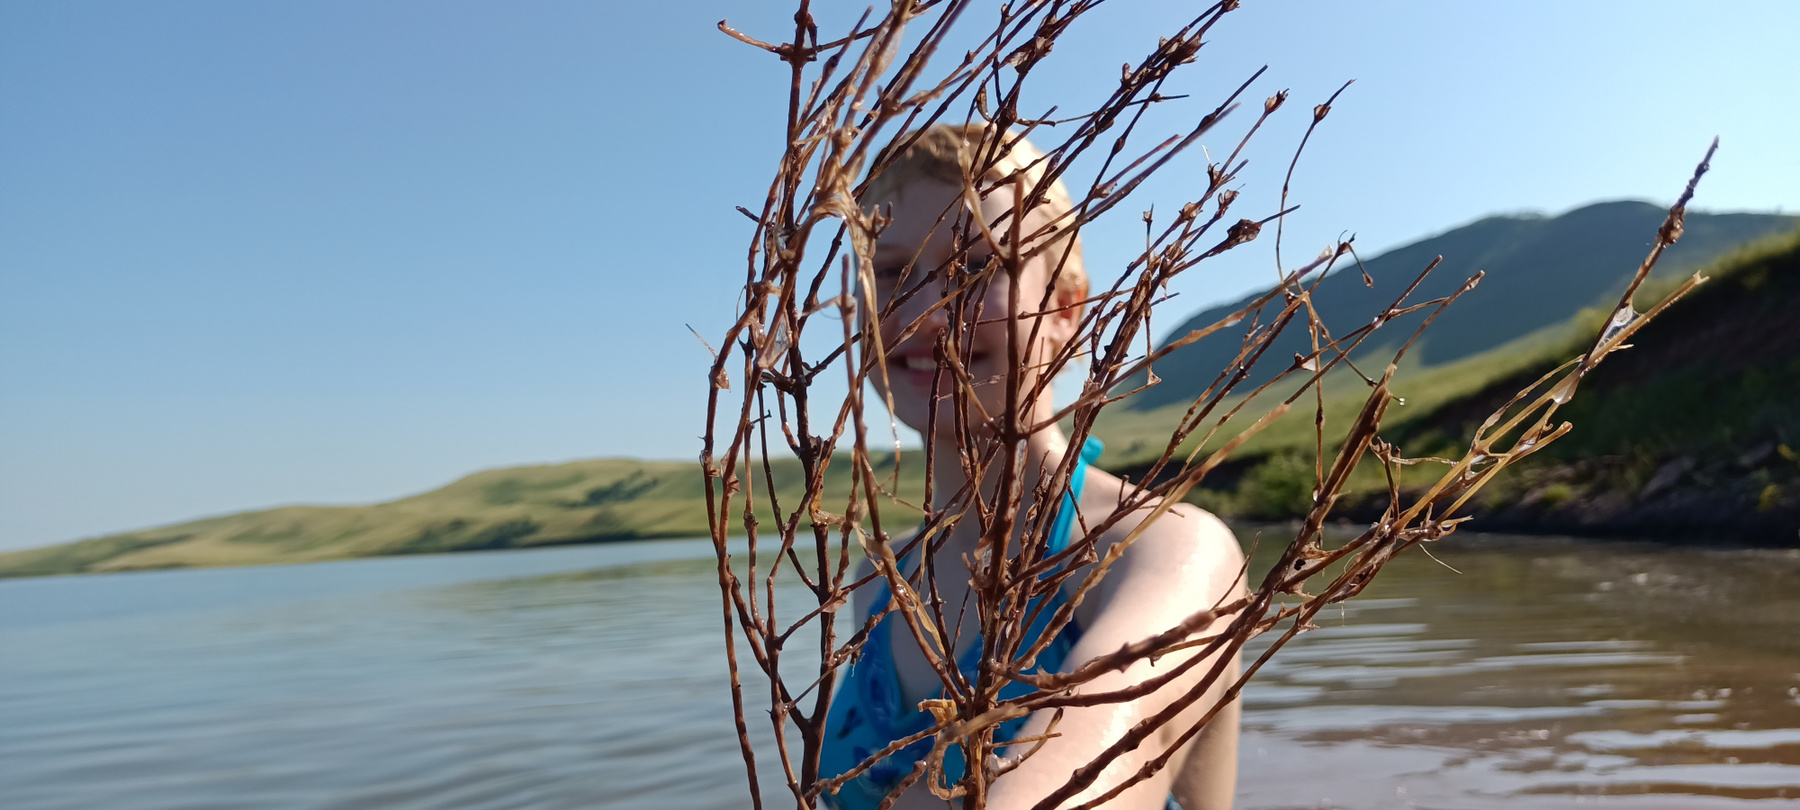 *** Озеро вода девочка куст берег лето отдых летний на озере Хакасия радость улыбка счастье